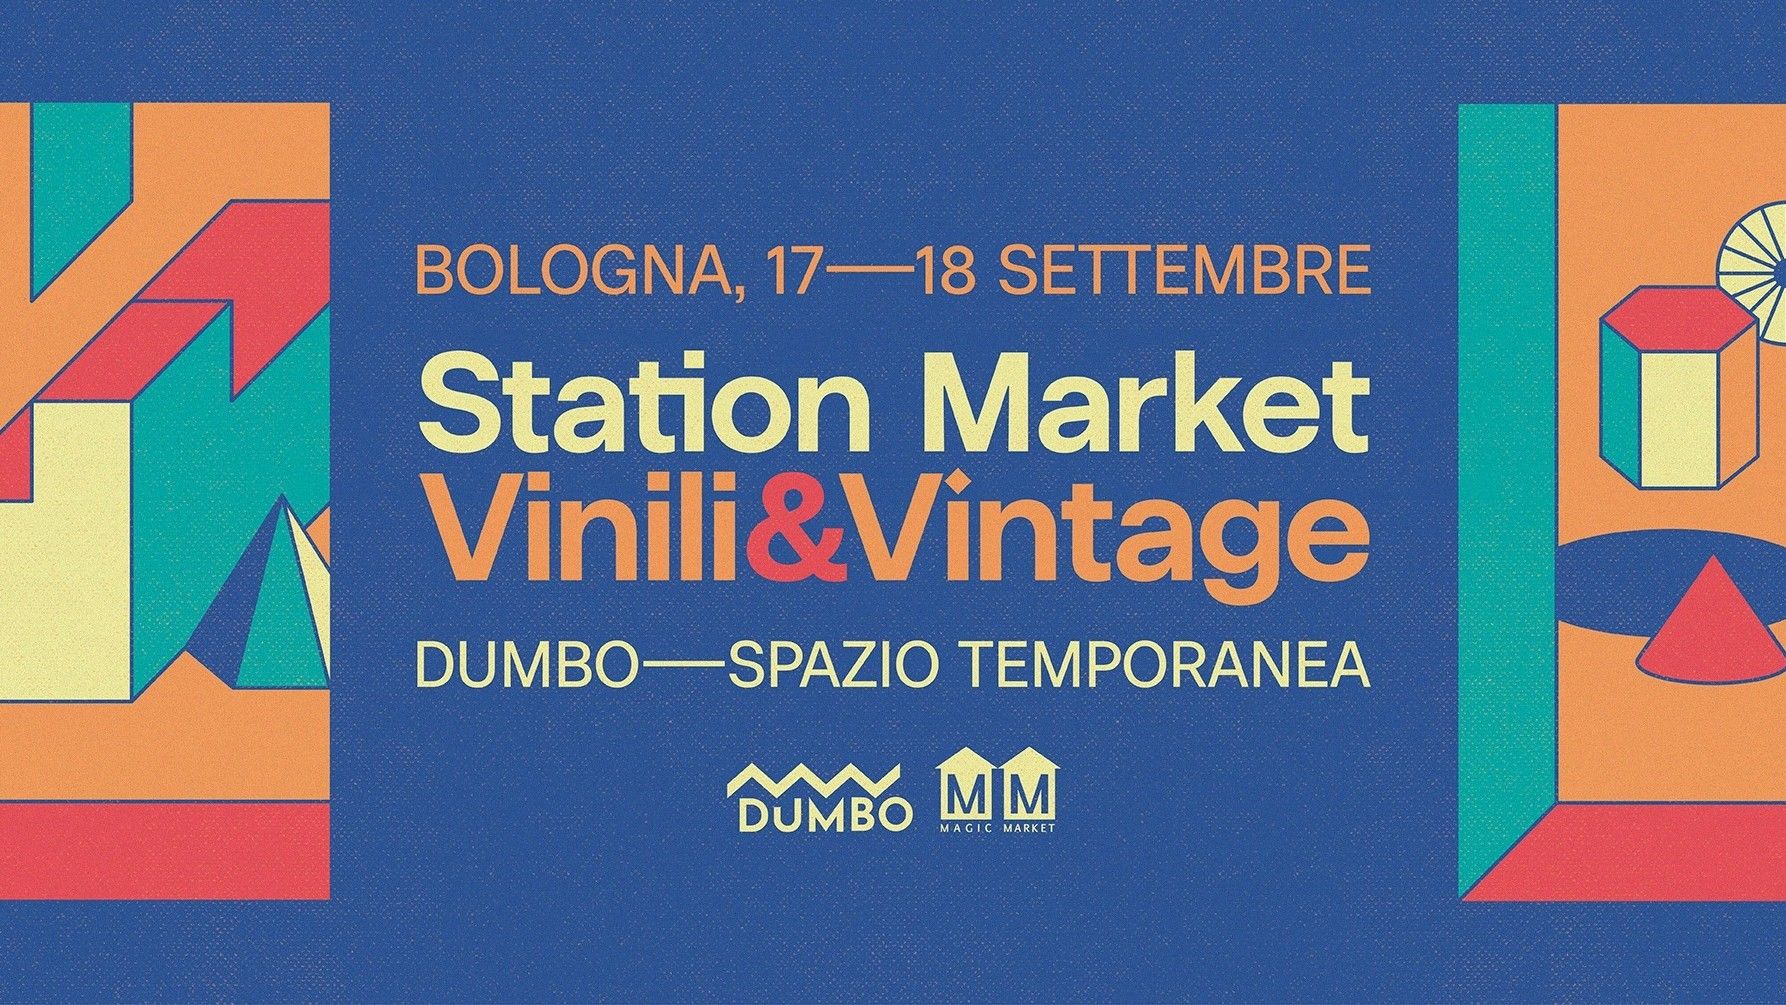 Station Market Vinili & Vintage